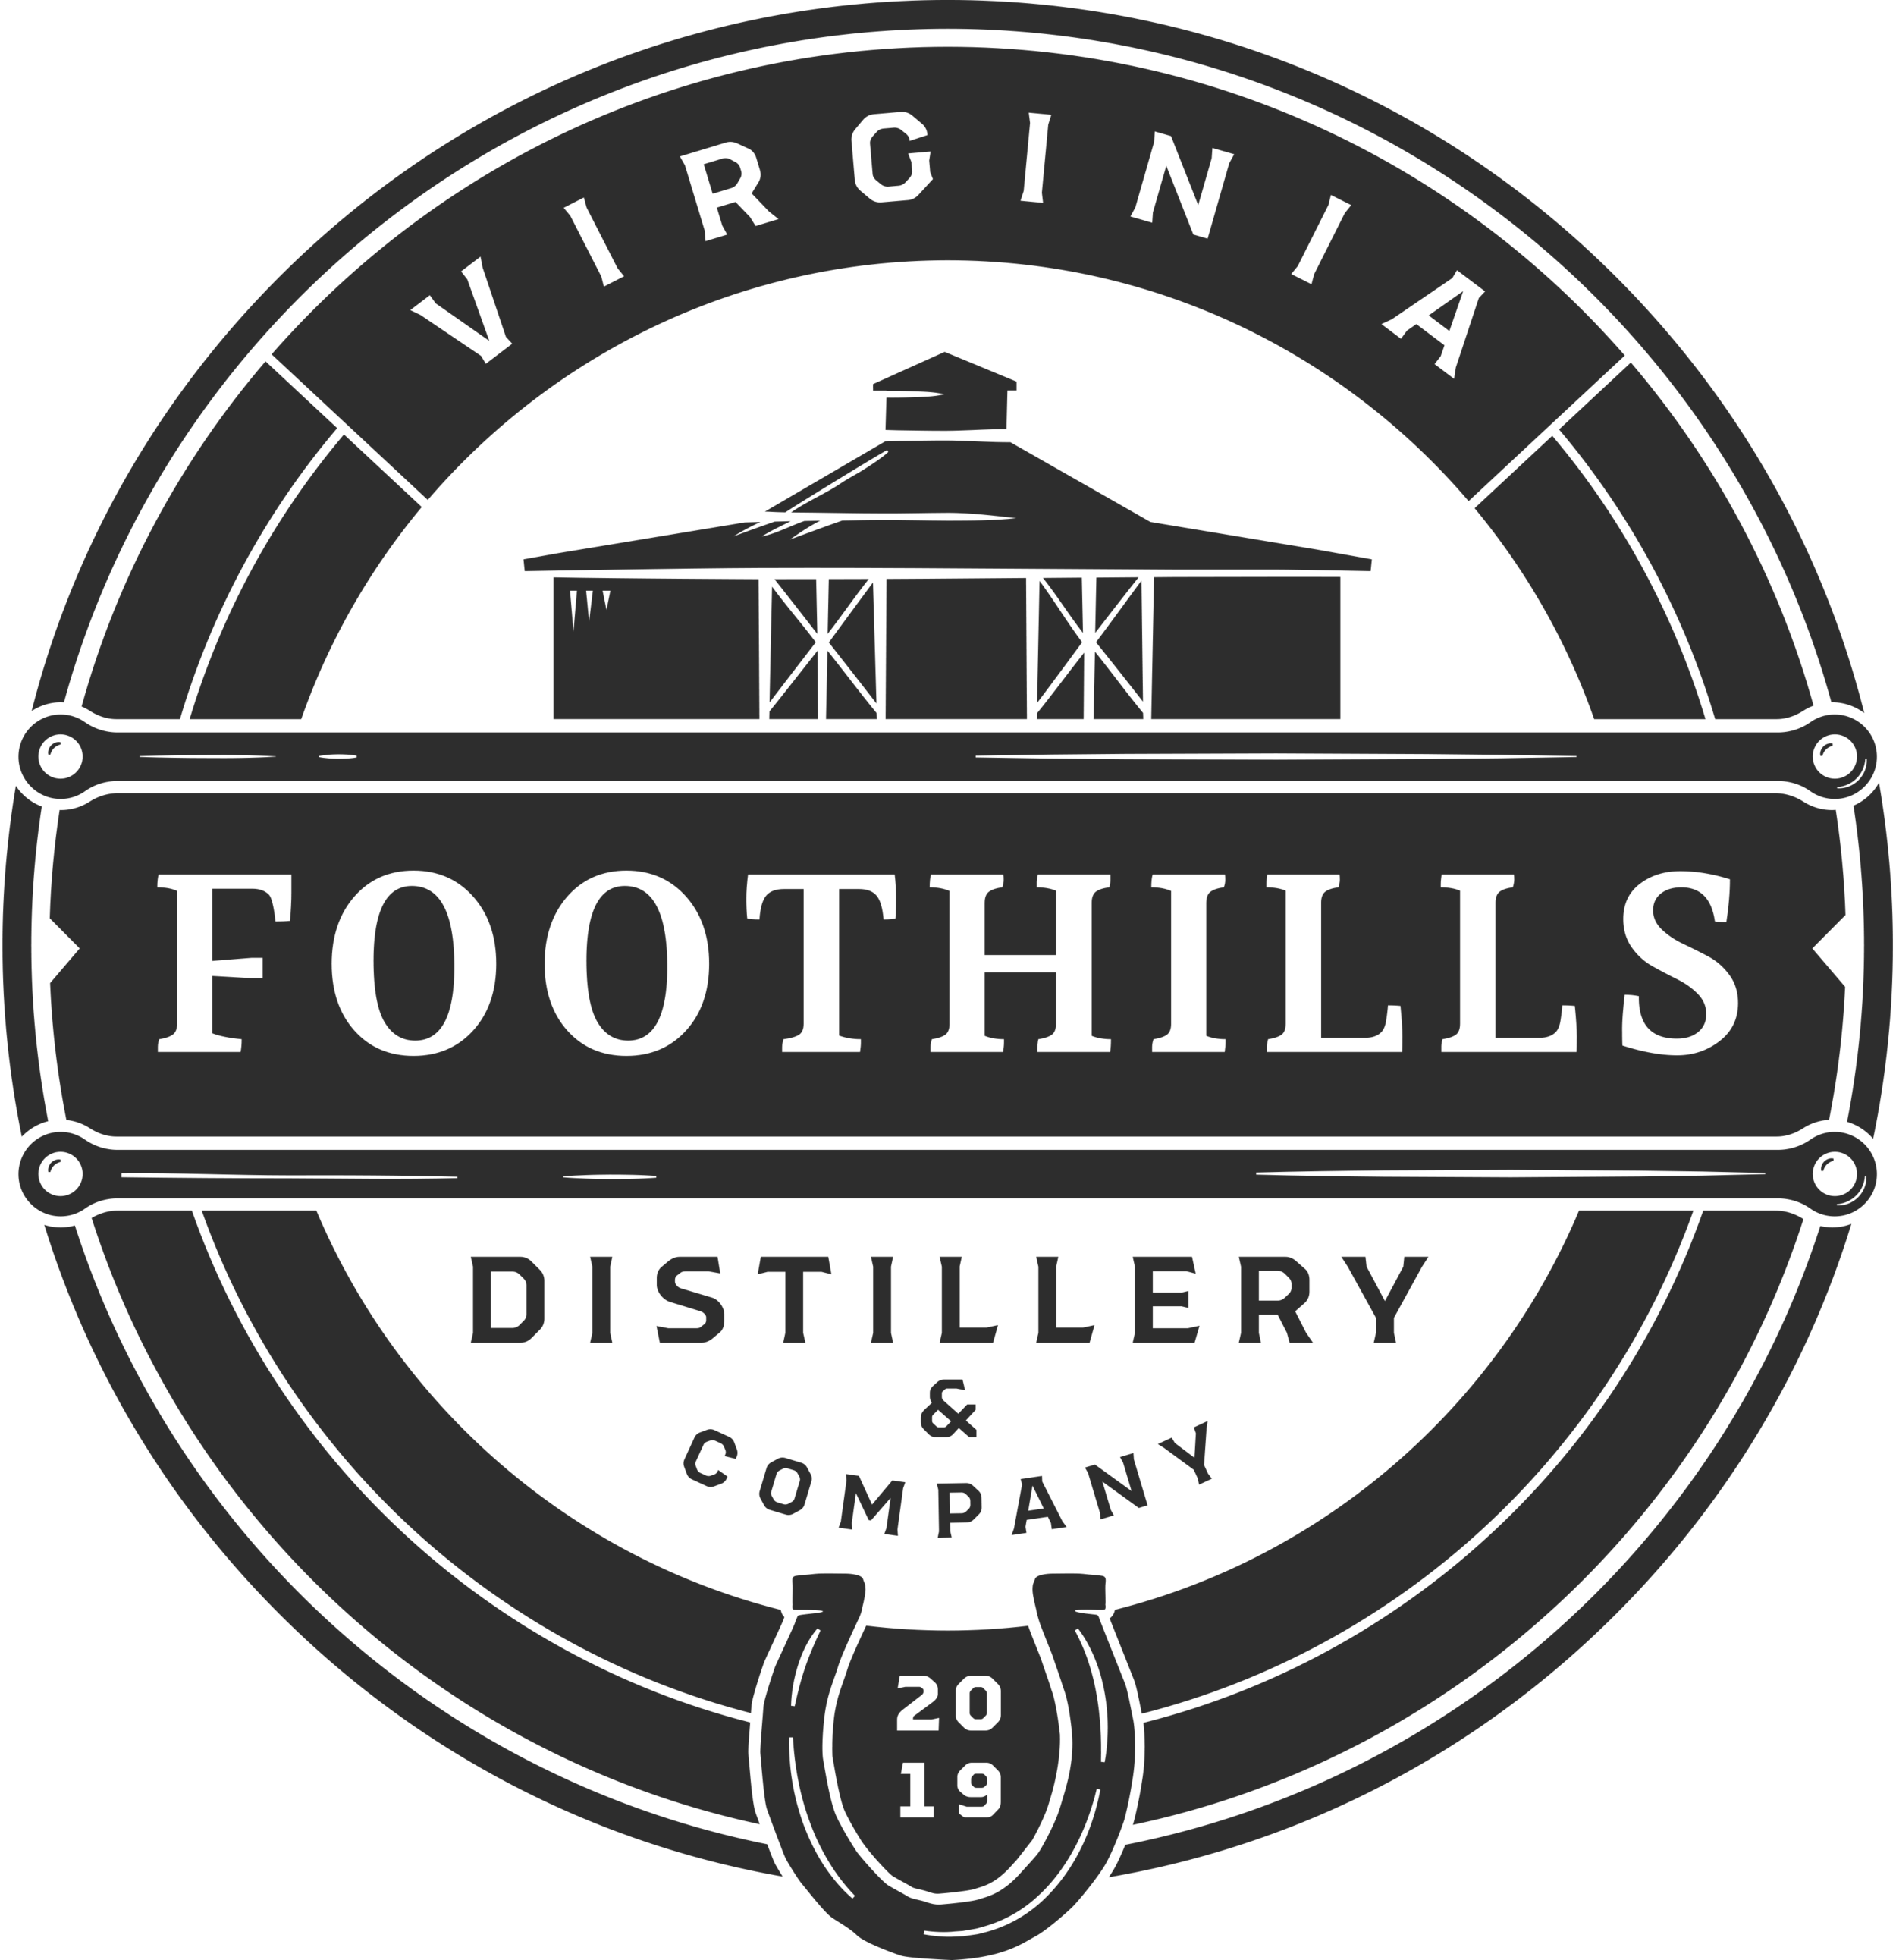 Virginia Foothills Distillery